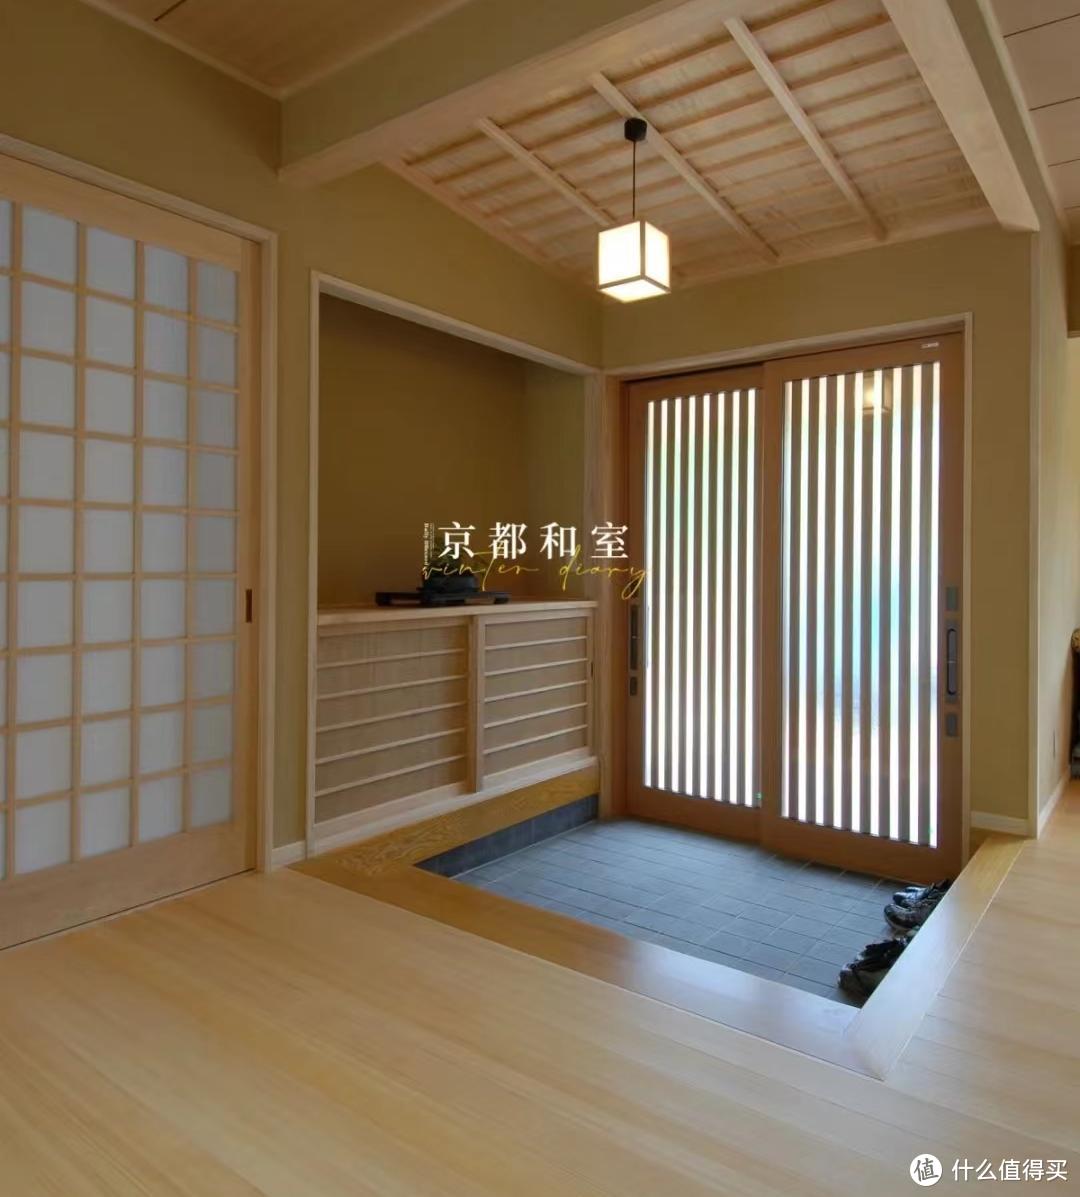 日式住宅的家里,几乎每家都是下沉式玄关的设计